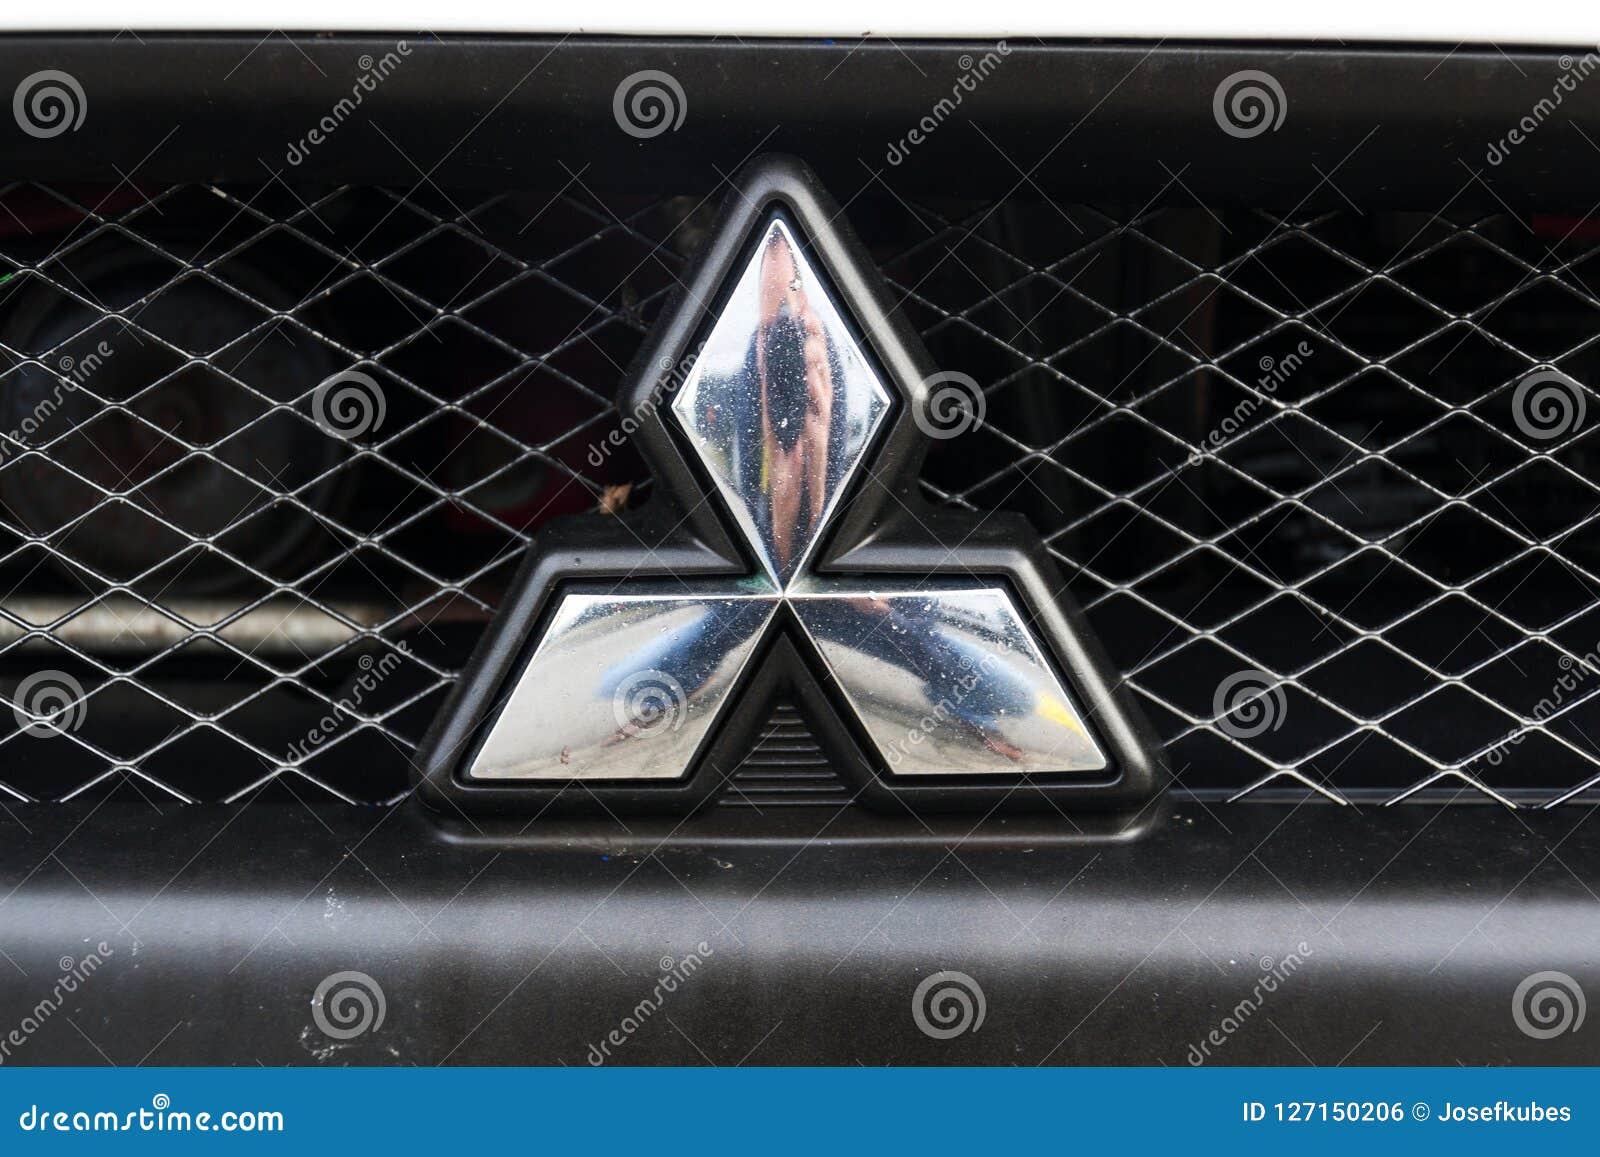 Mitsubishi Firmenlogo Auf Auto Redaktionelles Foto Bild Von Horizontal Zeichen